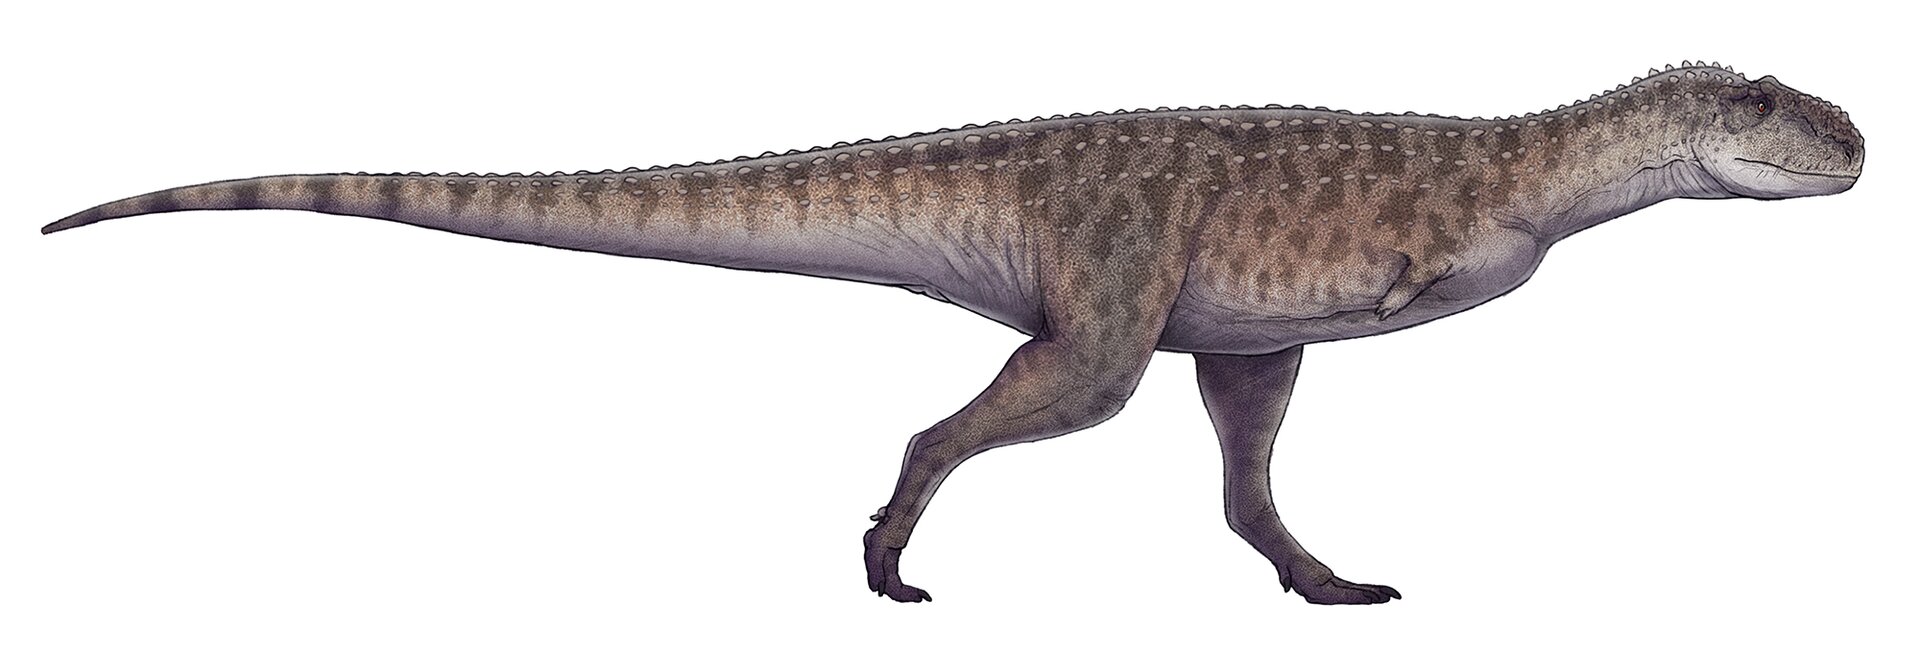 Zdjęcie przedstawia rajasaurusa. Rajasaurus to „królewski jaszczur”. Ten olbrzymi dinozaur miał długi ogon stanowiący przeciwwagę dla ciała. Miał też masywną czaszkę i długie kończyny dolne. Przednie były słabo wykształcone. Plamiaste ciało pokrywały łuski koloru brązowego. Jego ciało pokrywały niewielkie kolce.